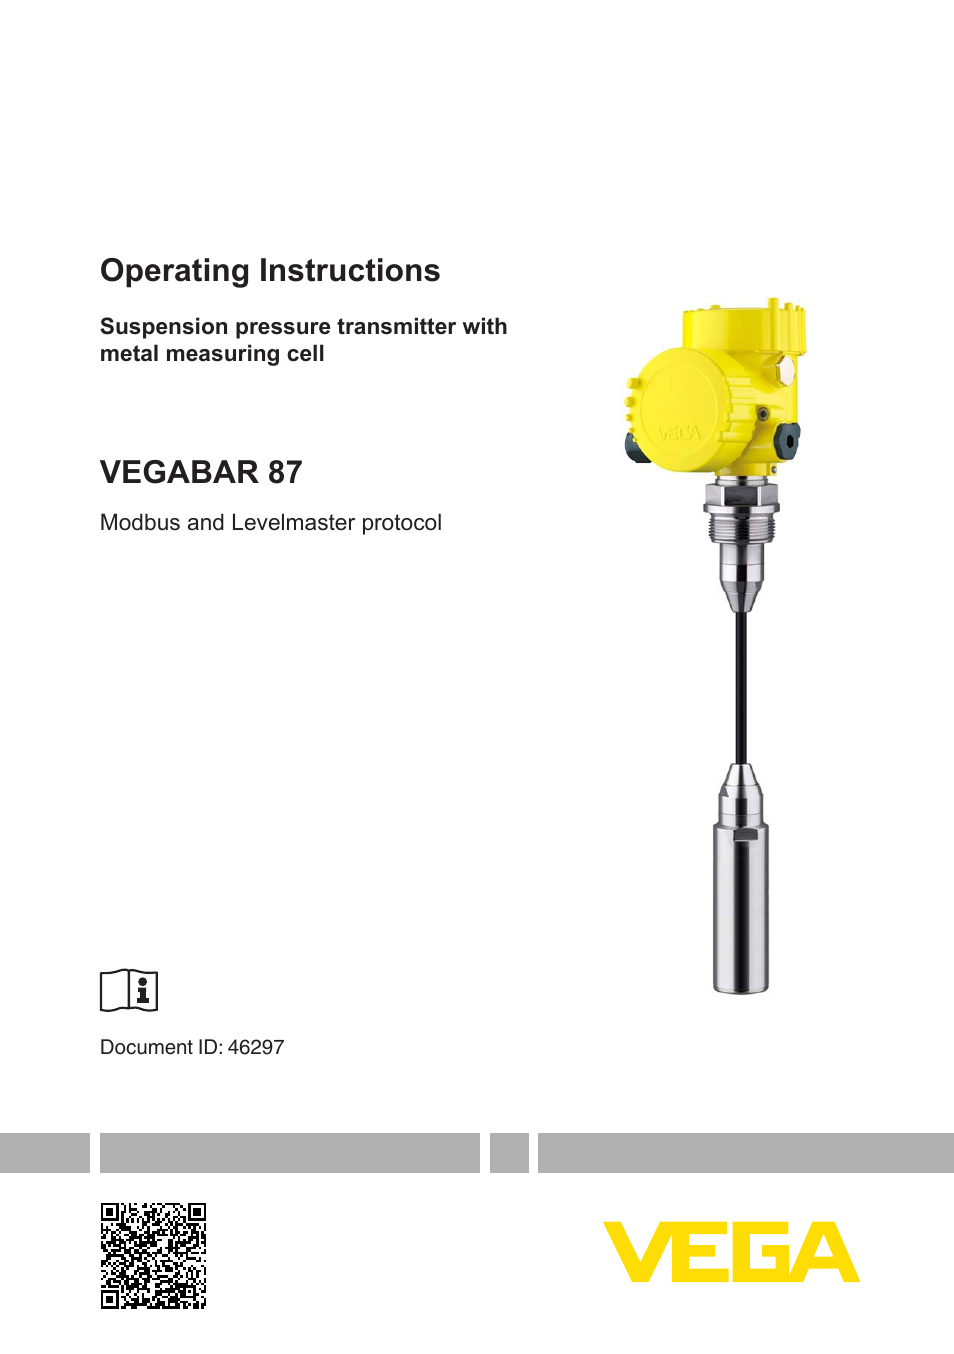 VEGABAR 87 Modbus and Levelmaster protocol - Operating Instructions